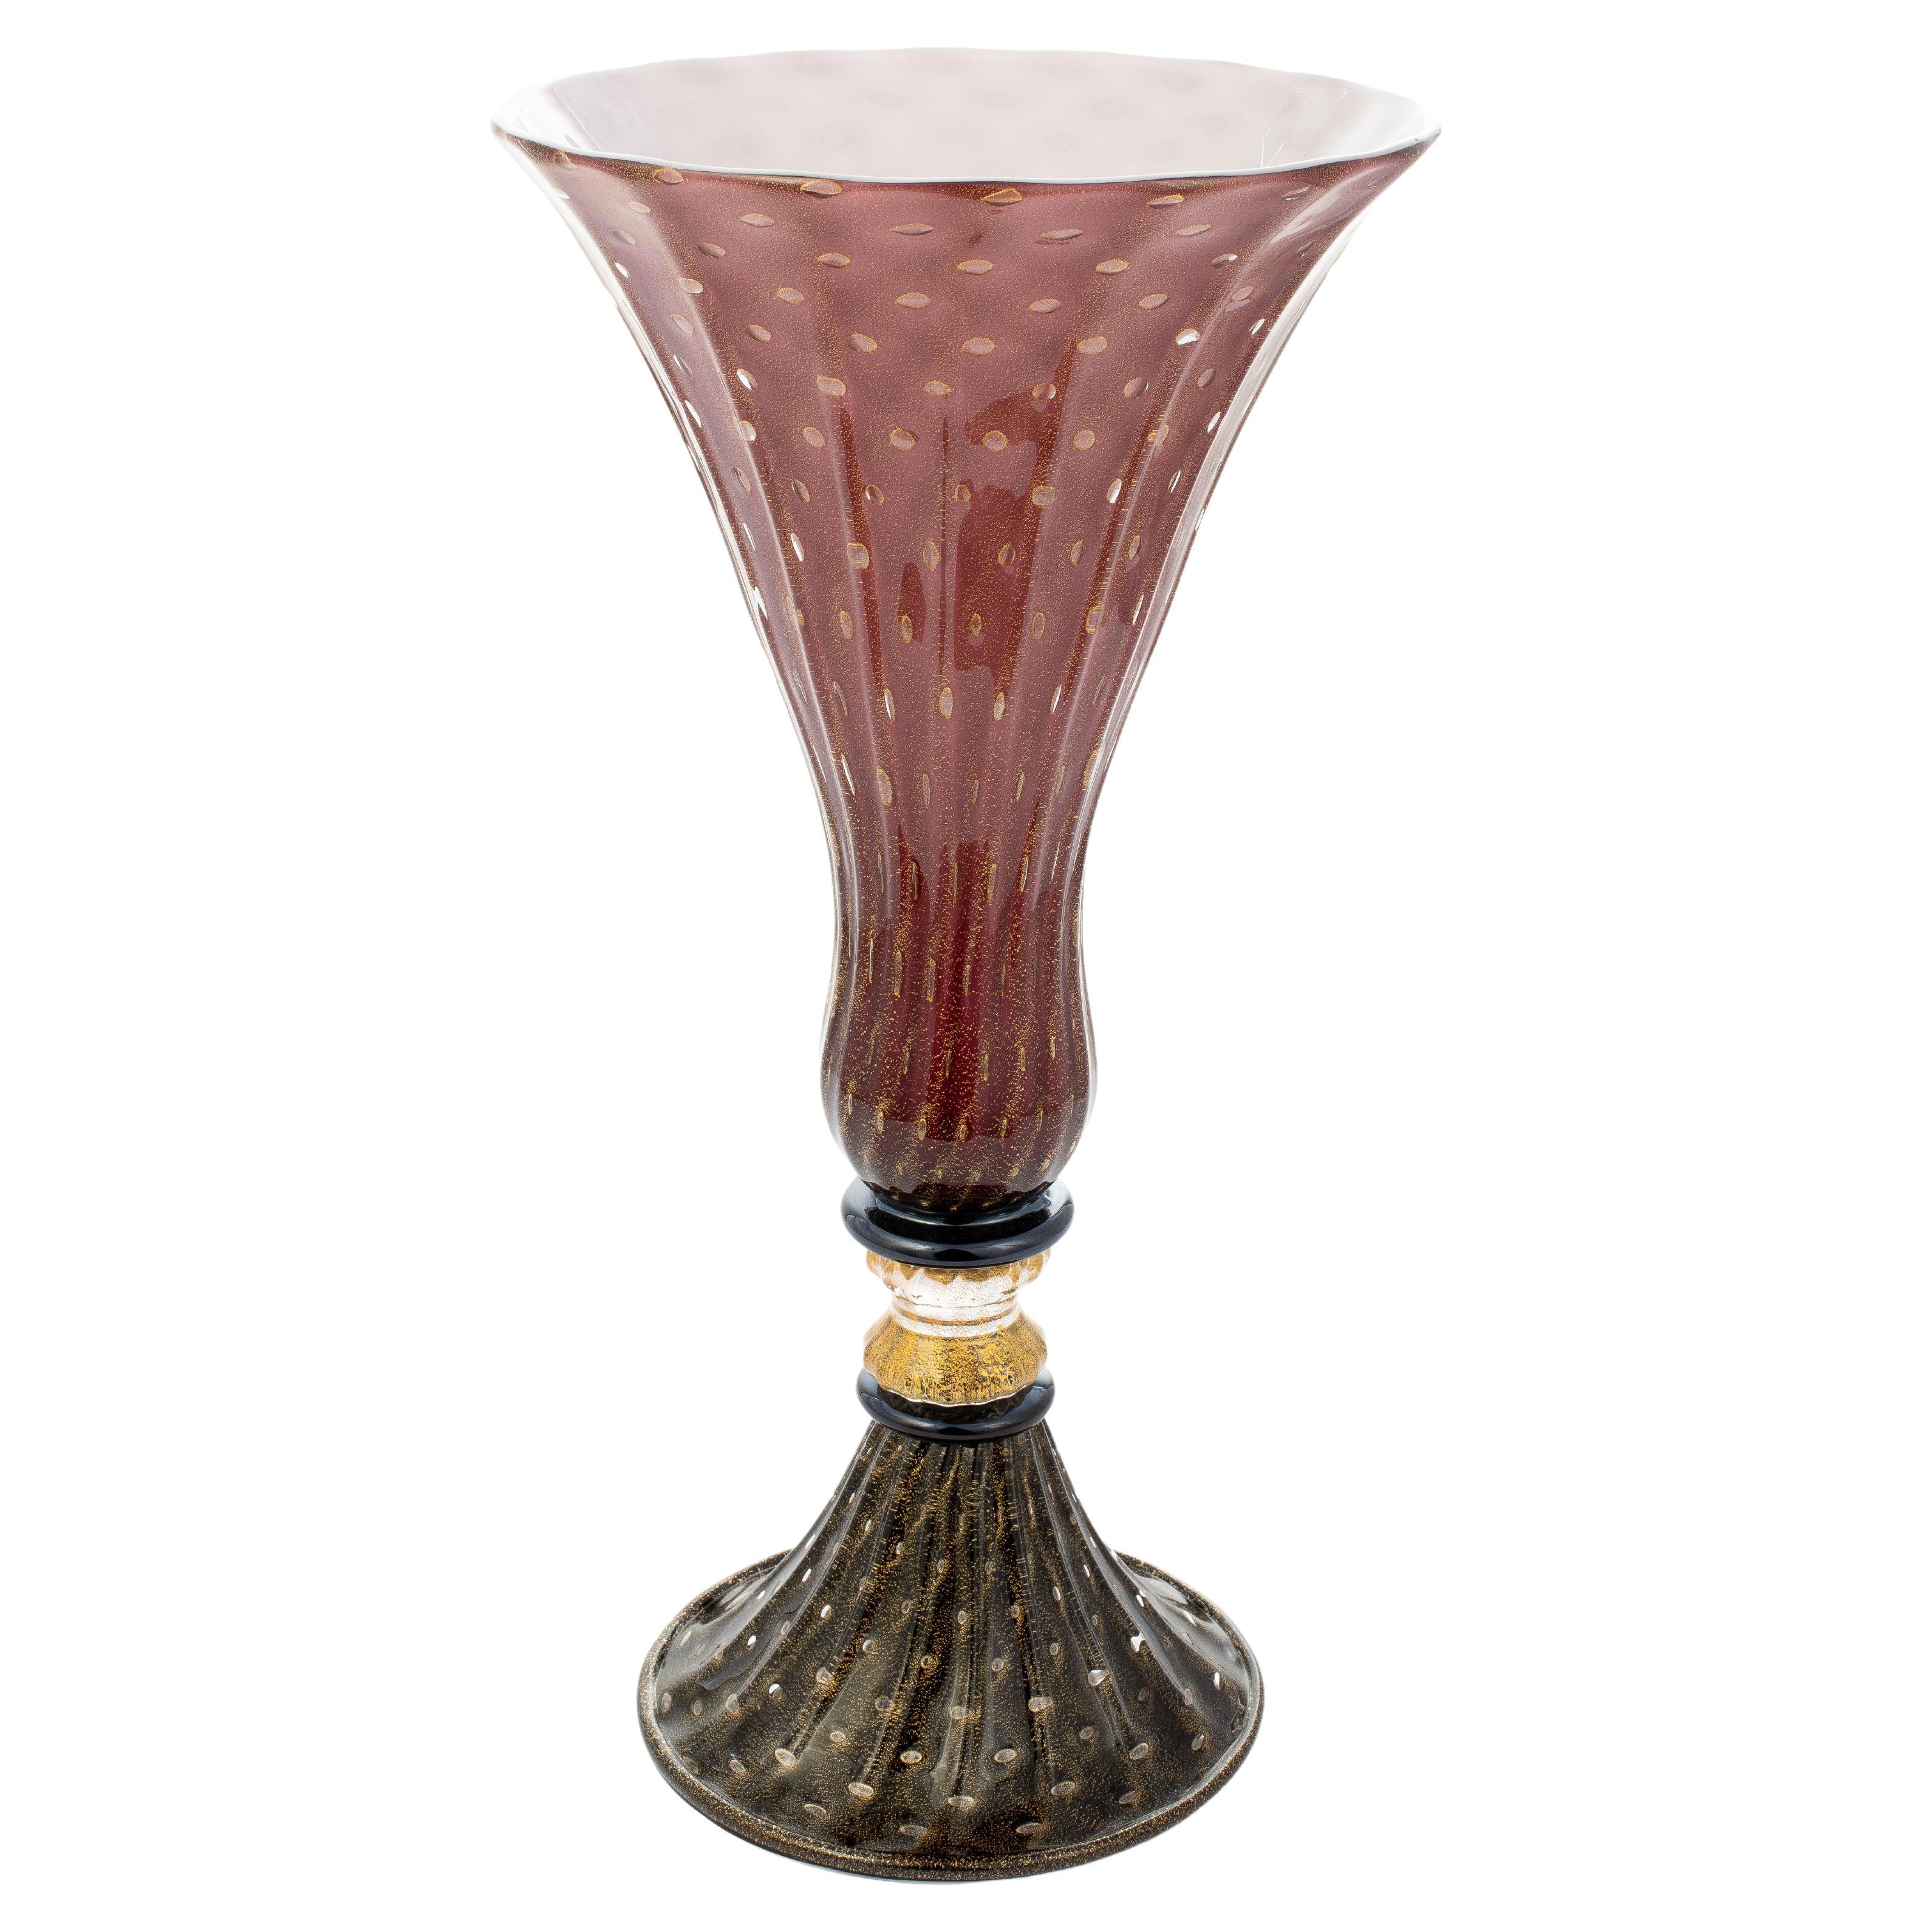 1295 Murano Hand Made Art Glass "Napoleone a Venezia" Vase Ltd